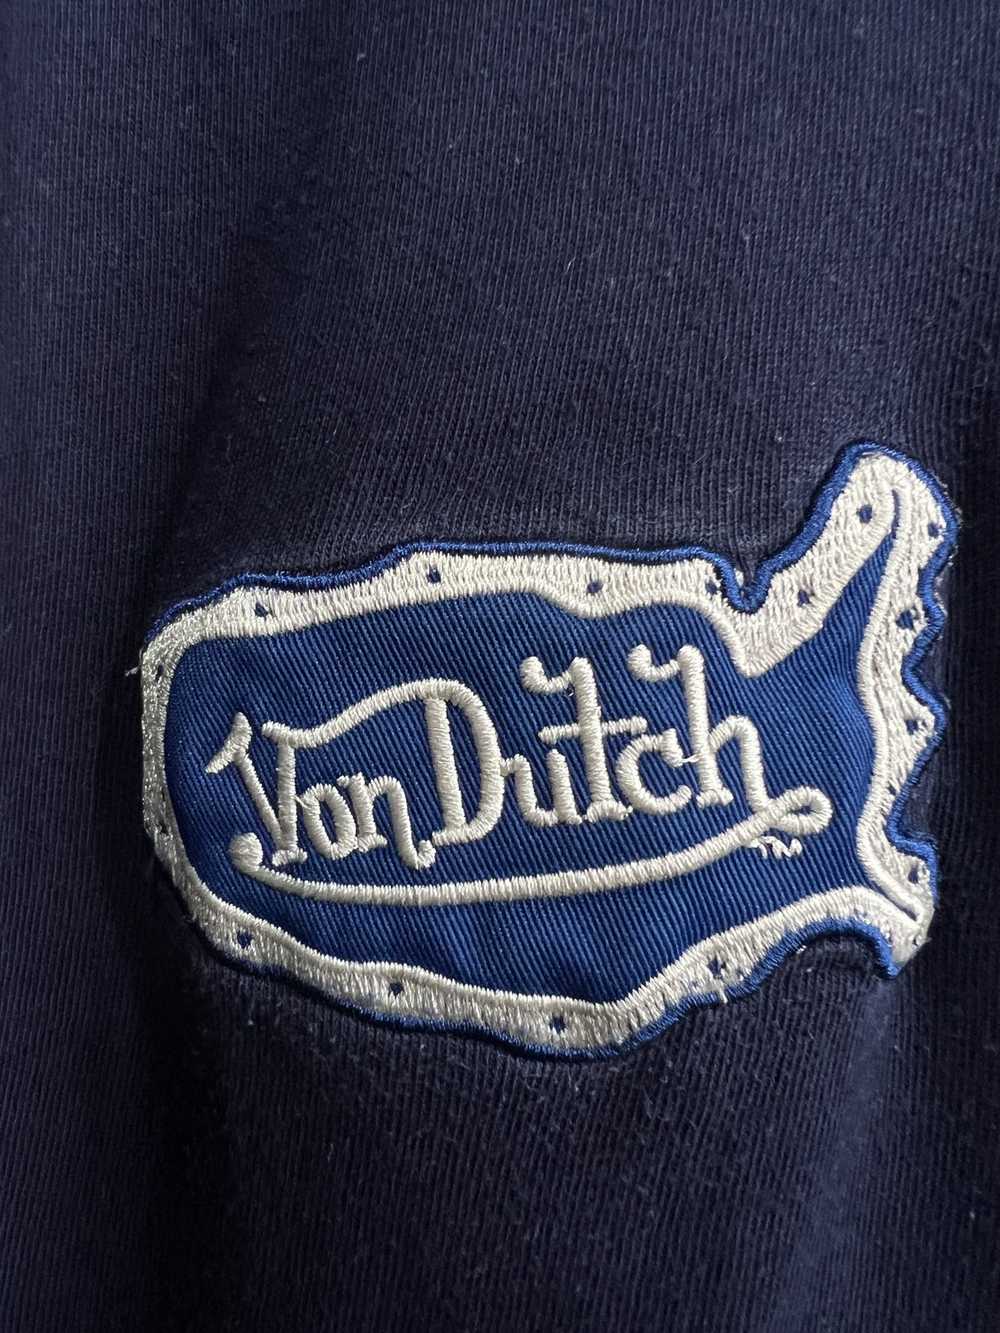 Streetwear × Von Dutch Von Dutch t shirt size XL - image 3